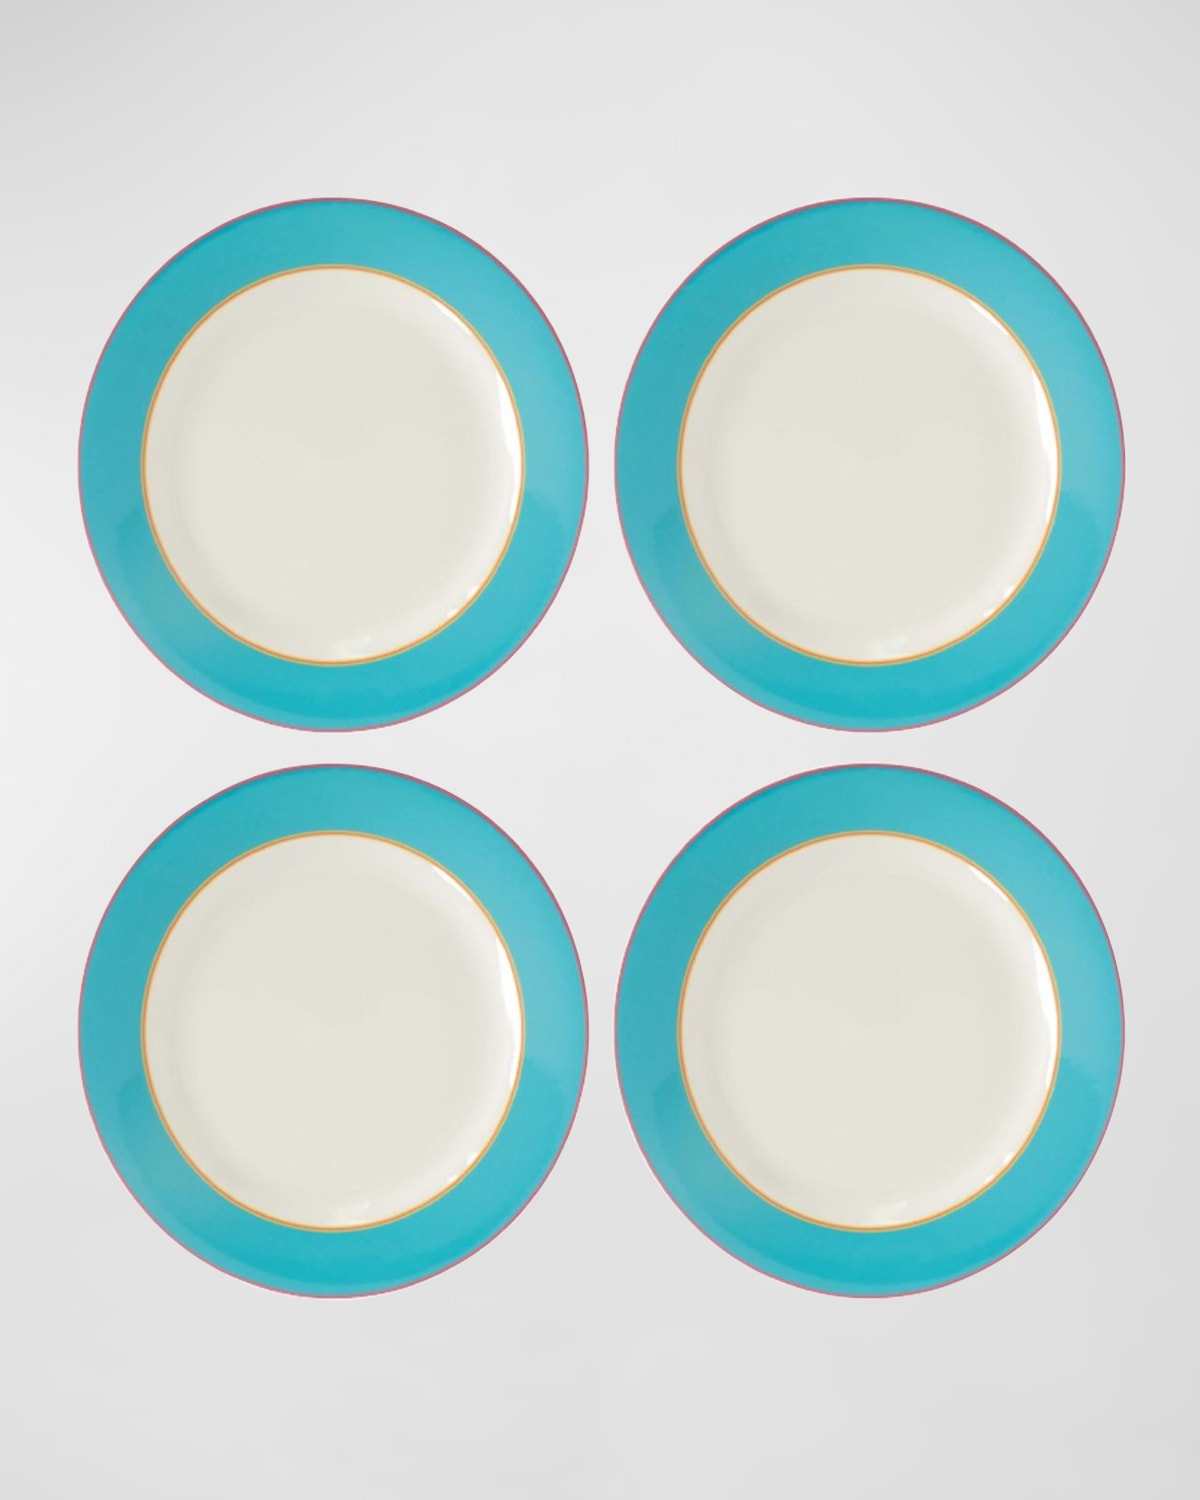 Kit Kemp For Spode Calypso Dinner Plates 11.5", Set Of 4 In Blue